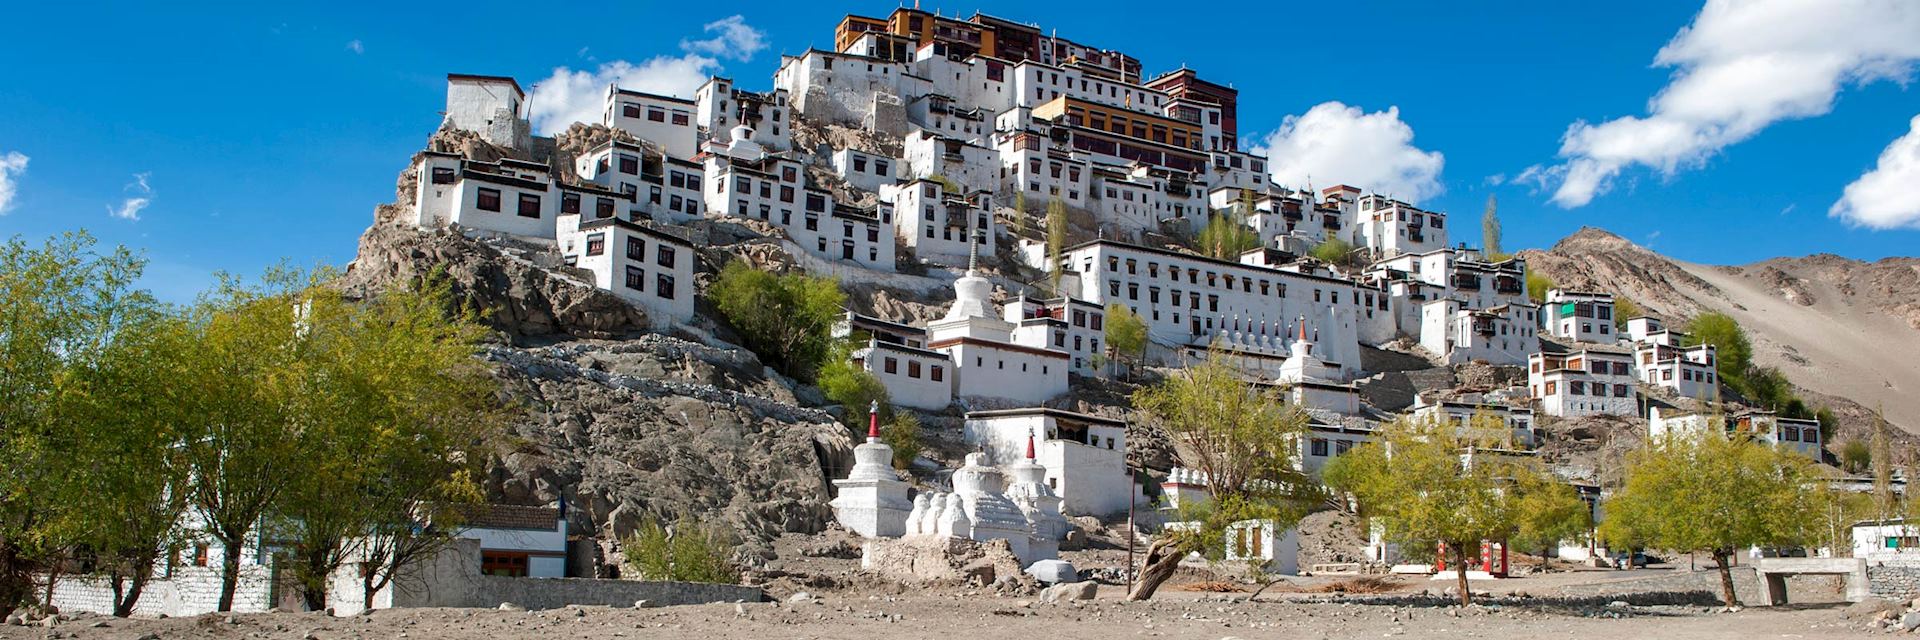 Thiske Monastery, Leh